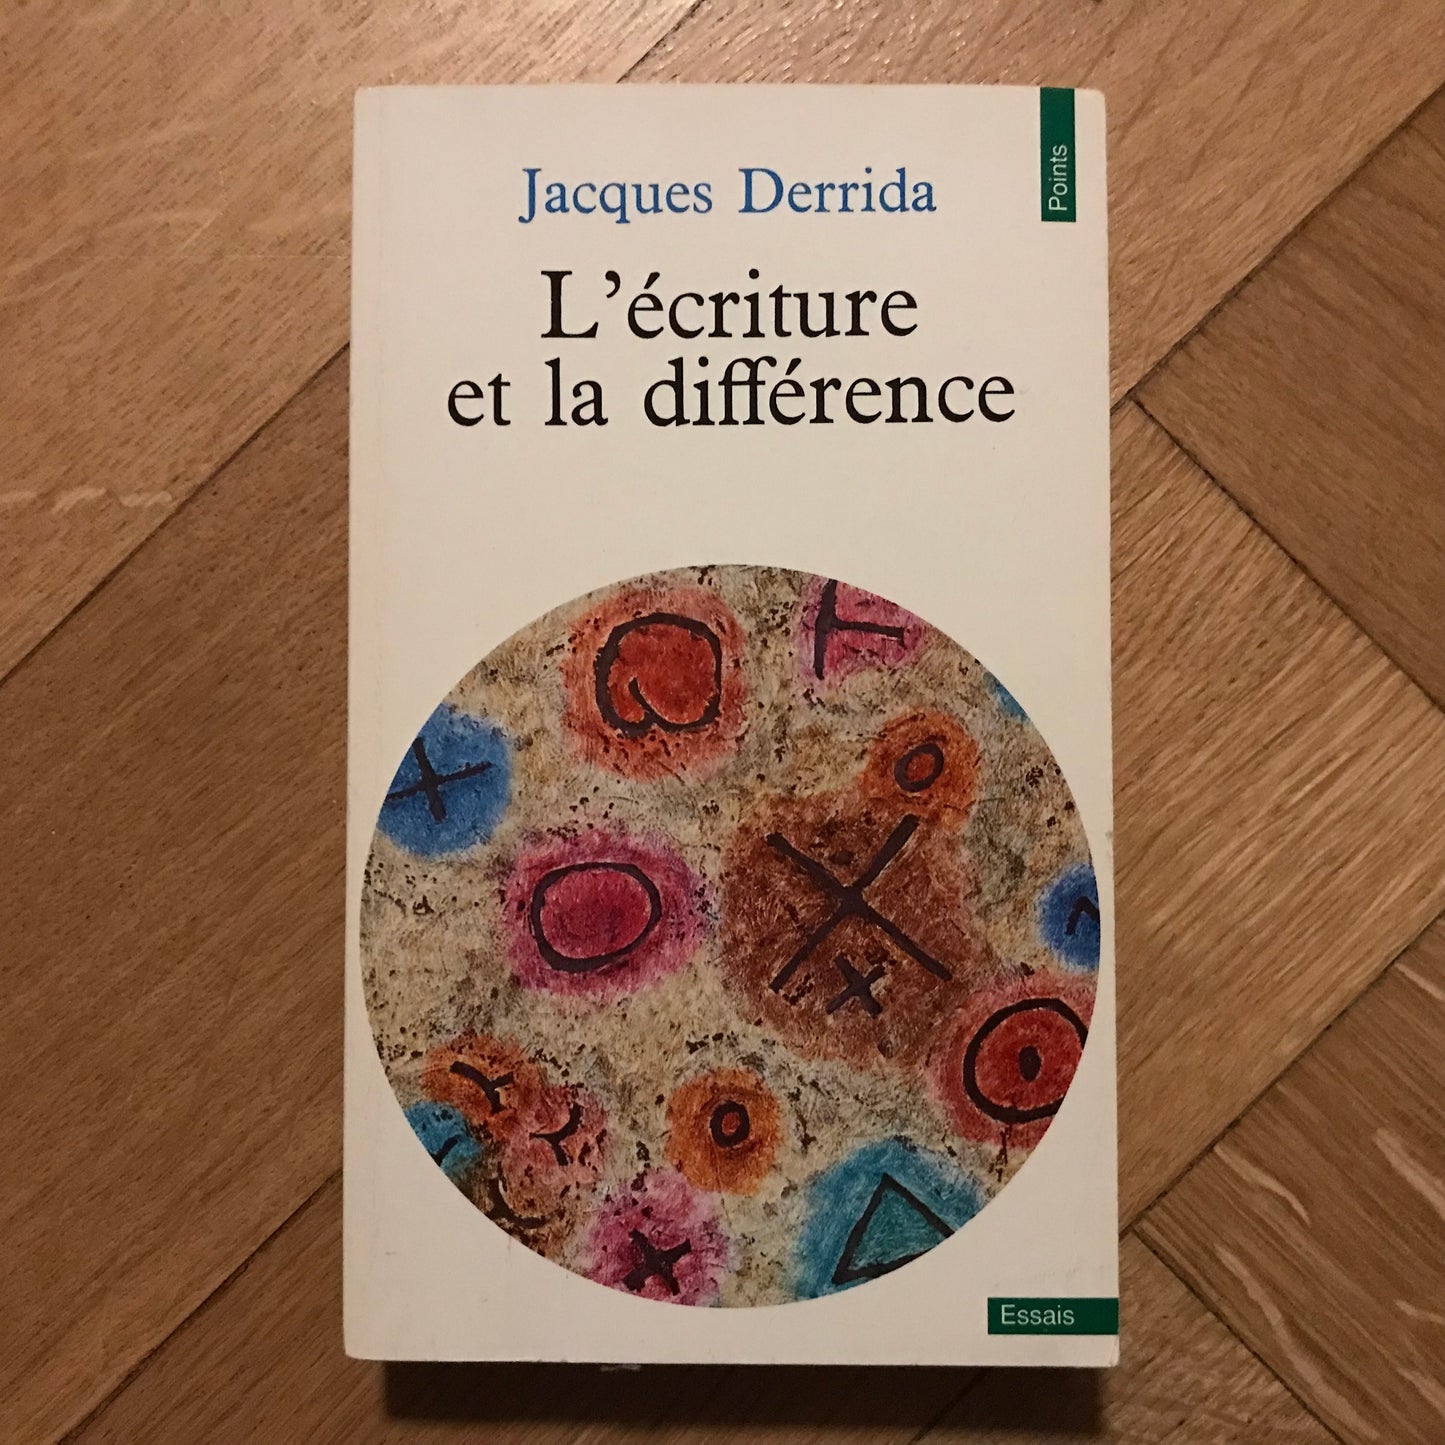 Derrida, Jacques - L’écriture et la différence